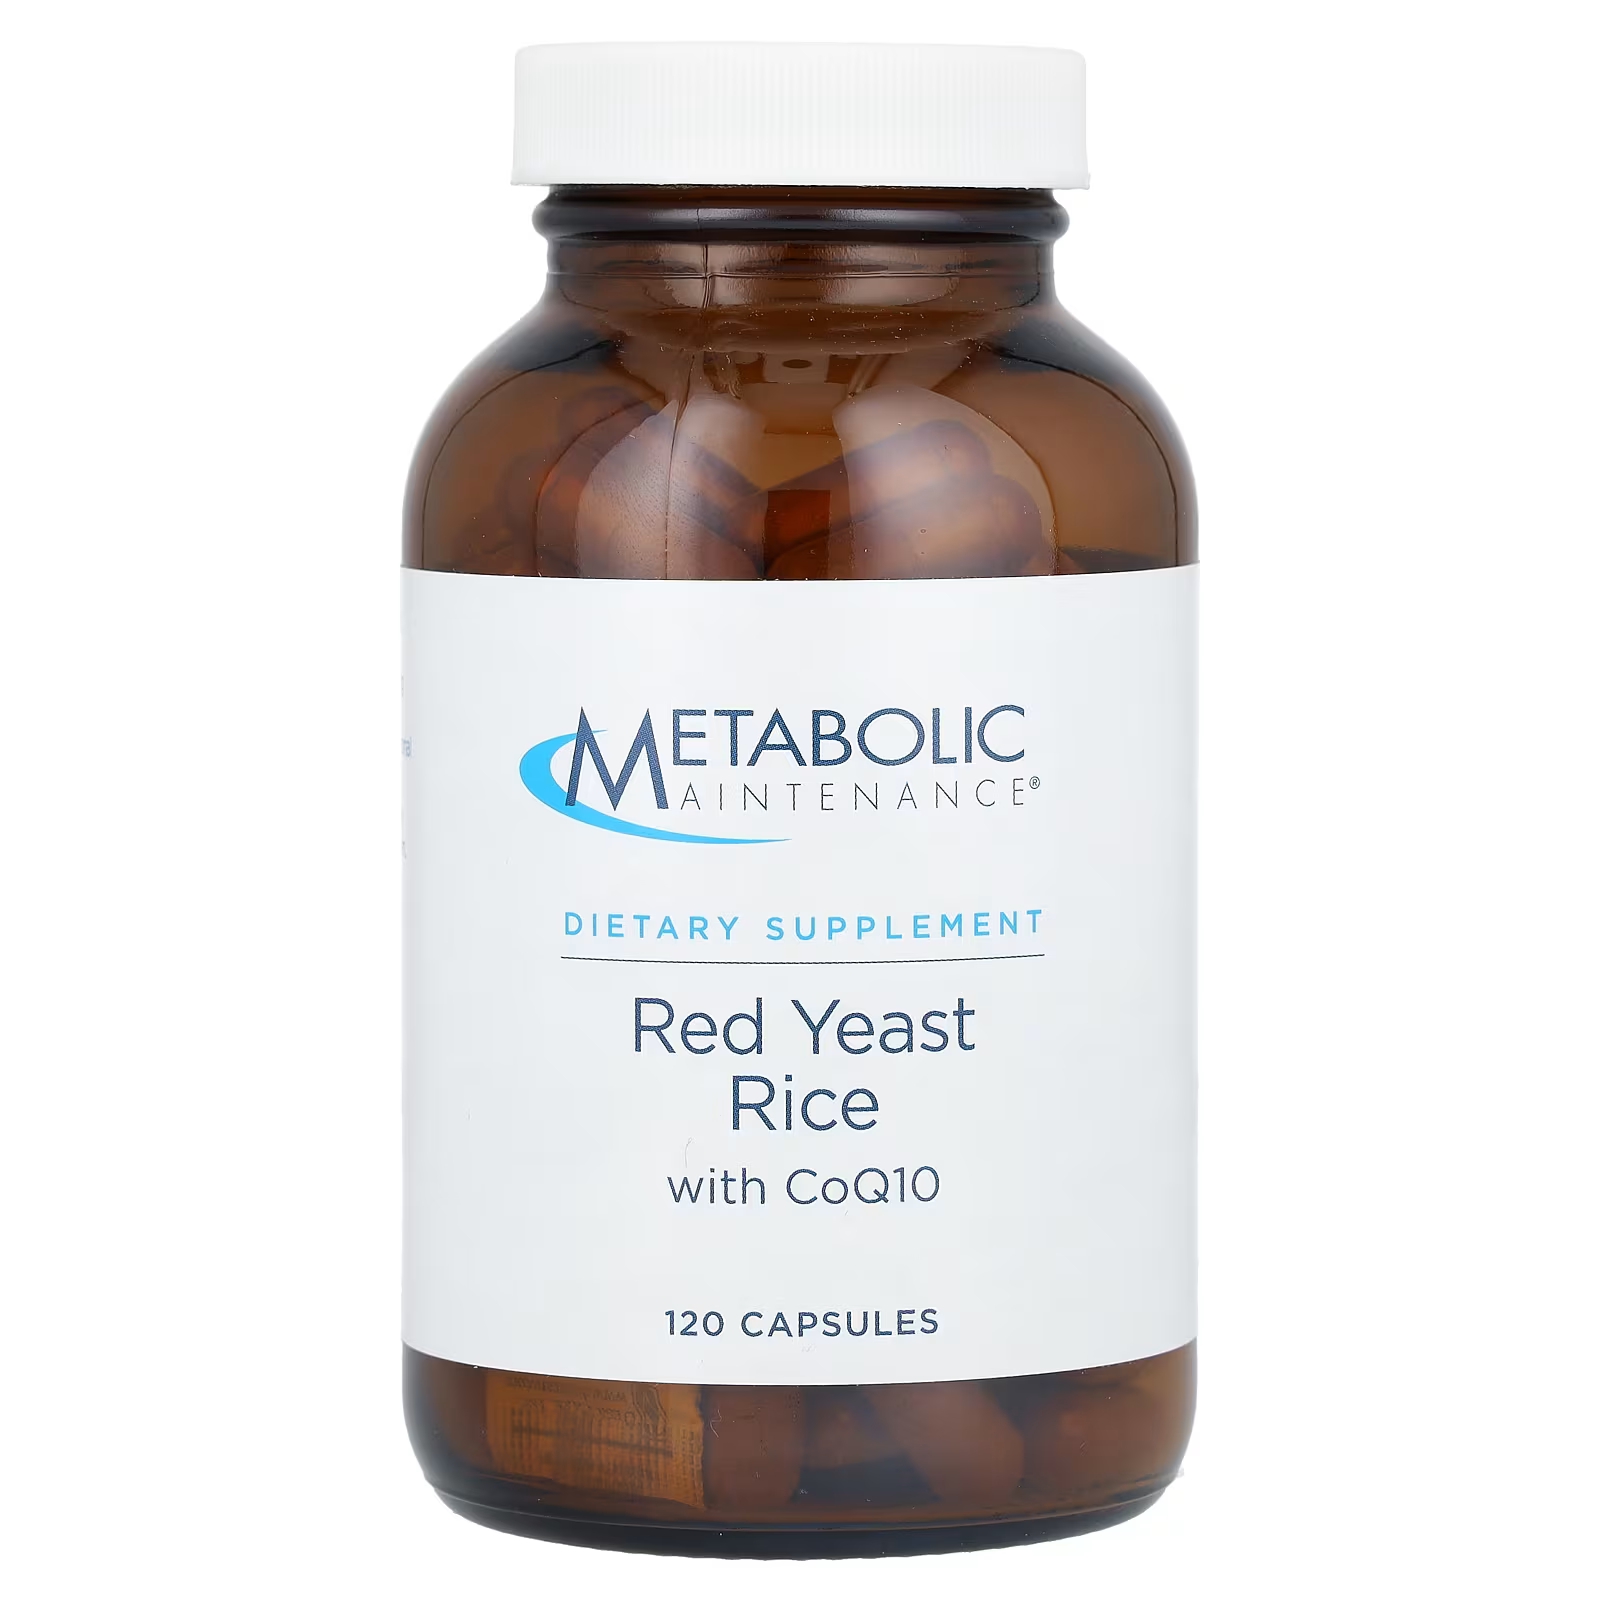 Красный дрожжевой рис Metabolic Maintenance для поддержания метаболизма с CoQ10, 120 капсул метаболическое обслуживание coq10 порошок апельсина 3 9 унции 110 г metabolic maintenance